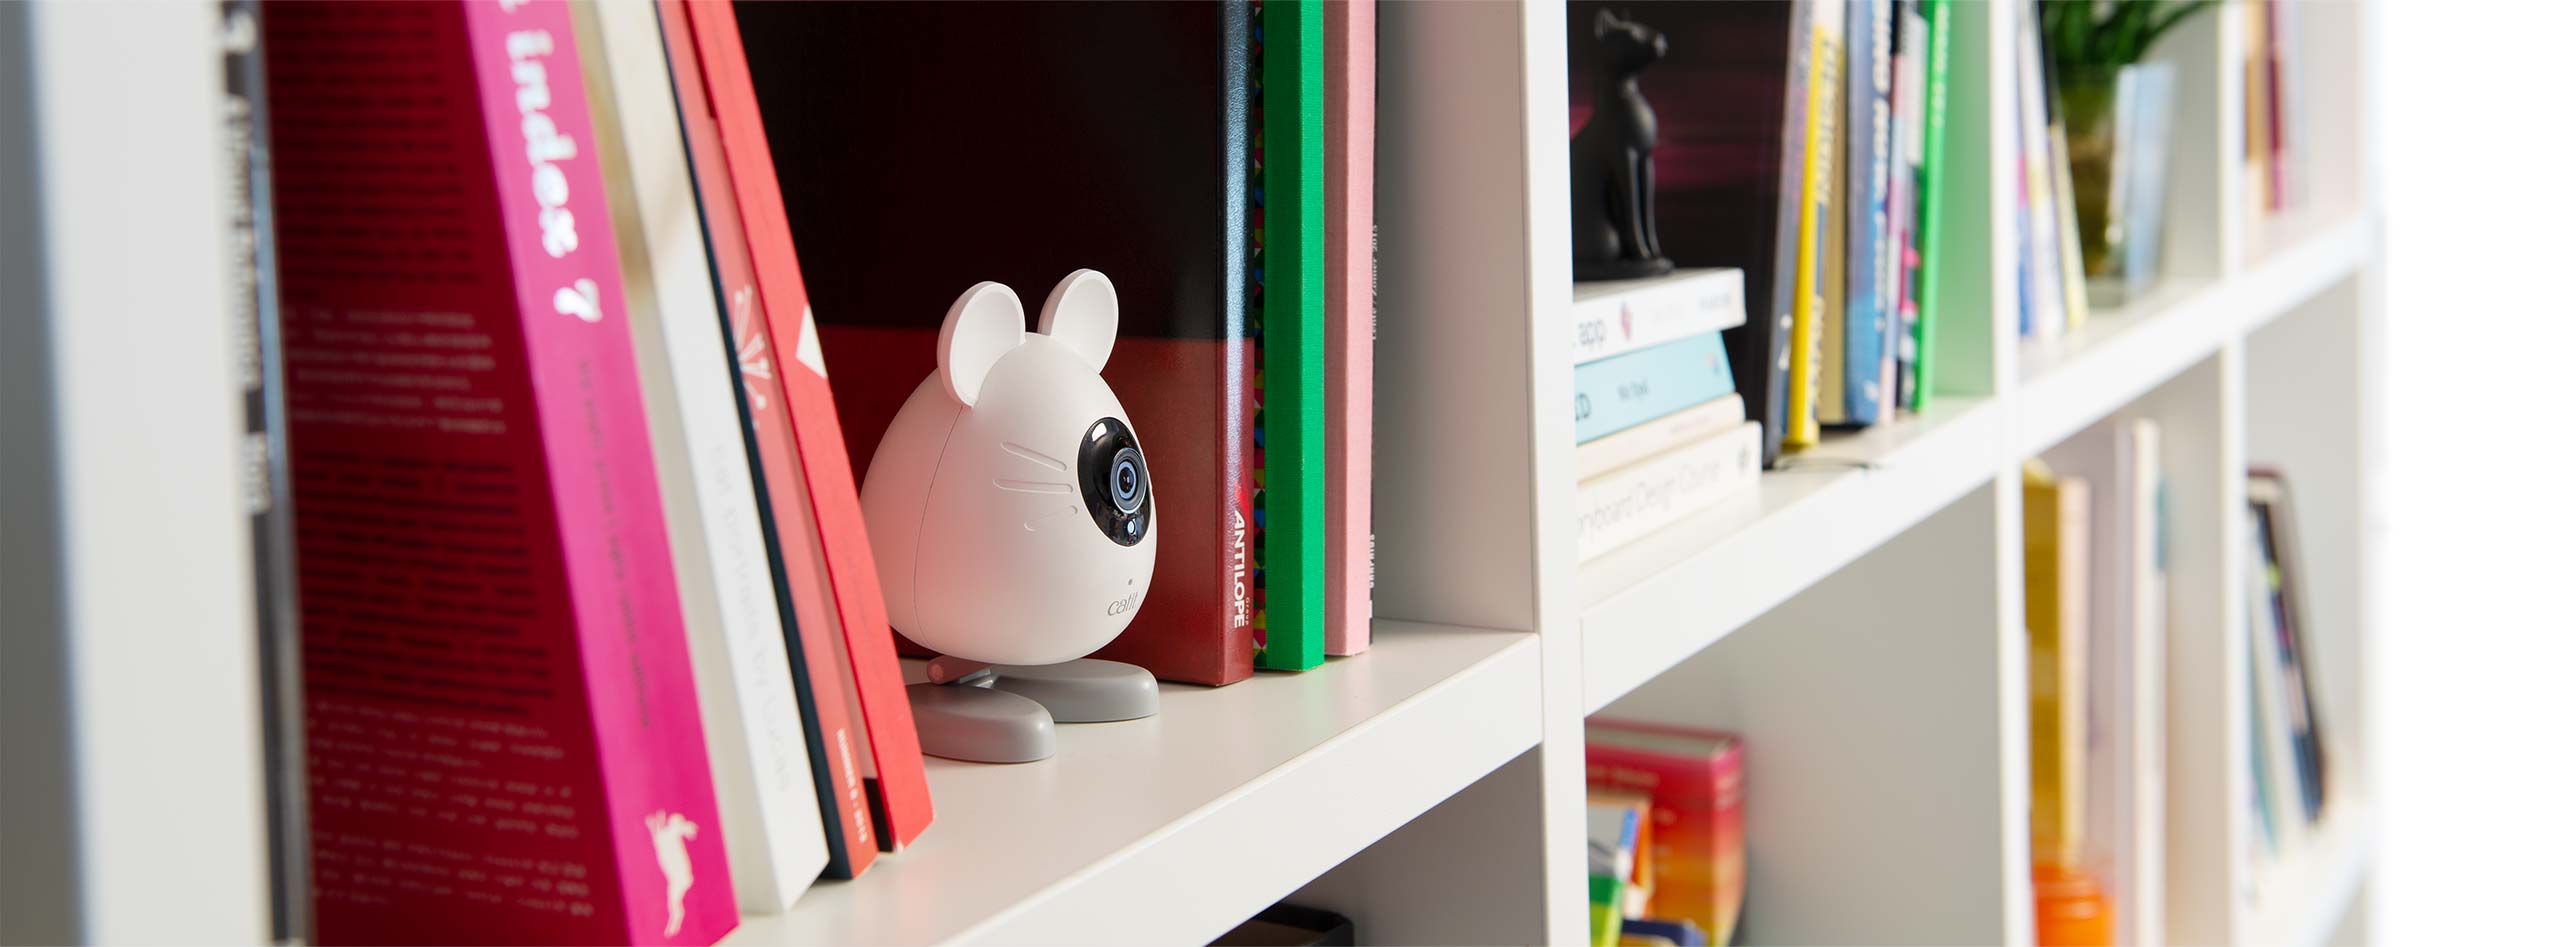 Eine PIXI Smart-Mauskamera im Bücherregal